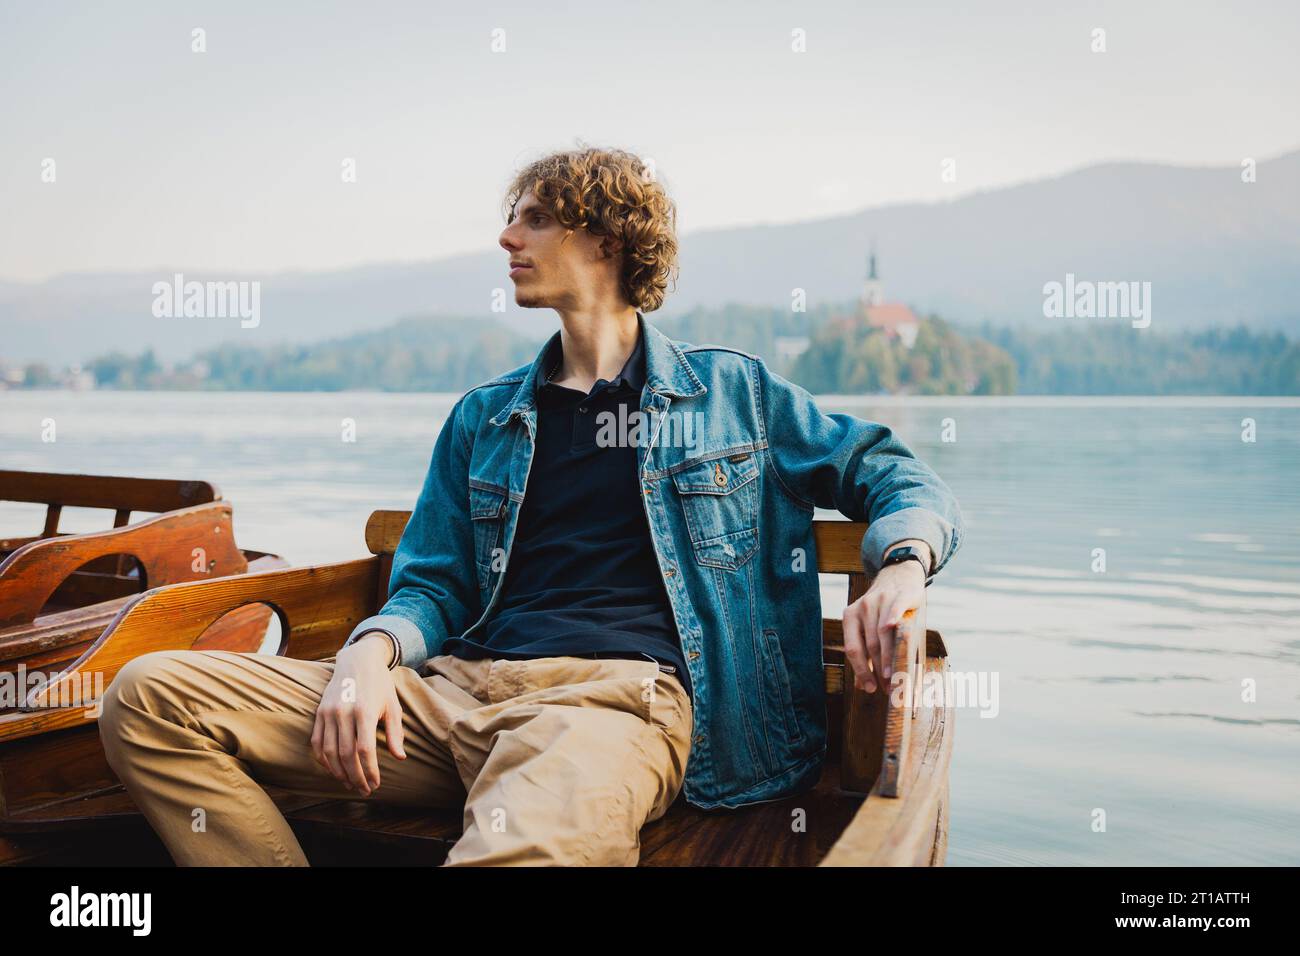 Un uomo si rilassa seduto su una barca nel lago e guarda intorno Foto Stock